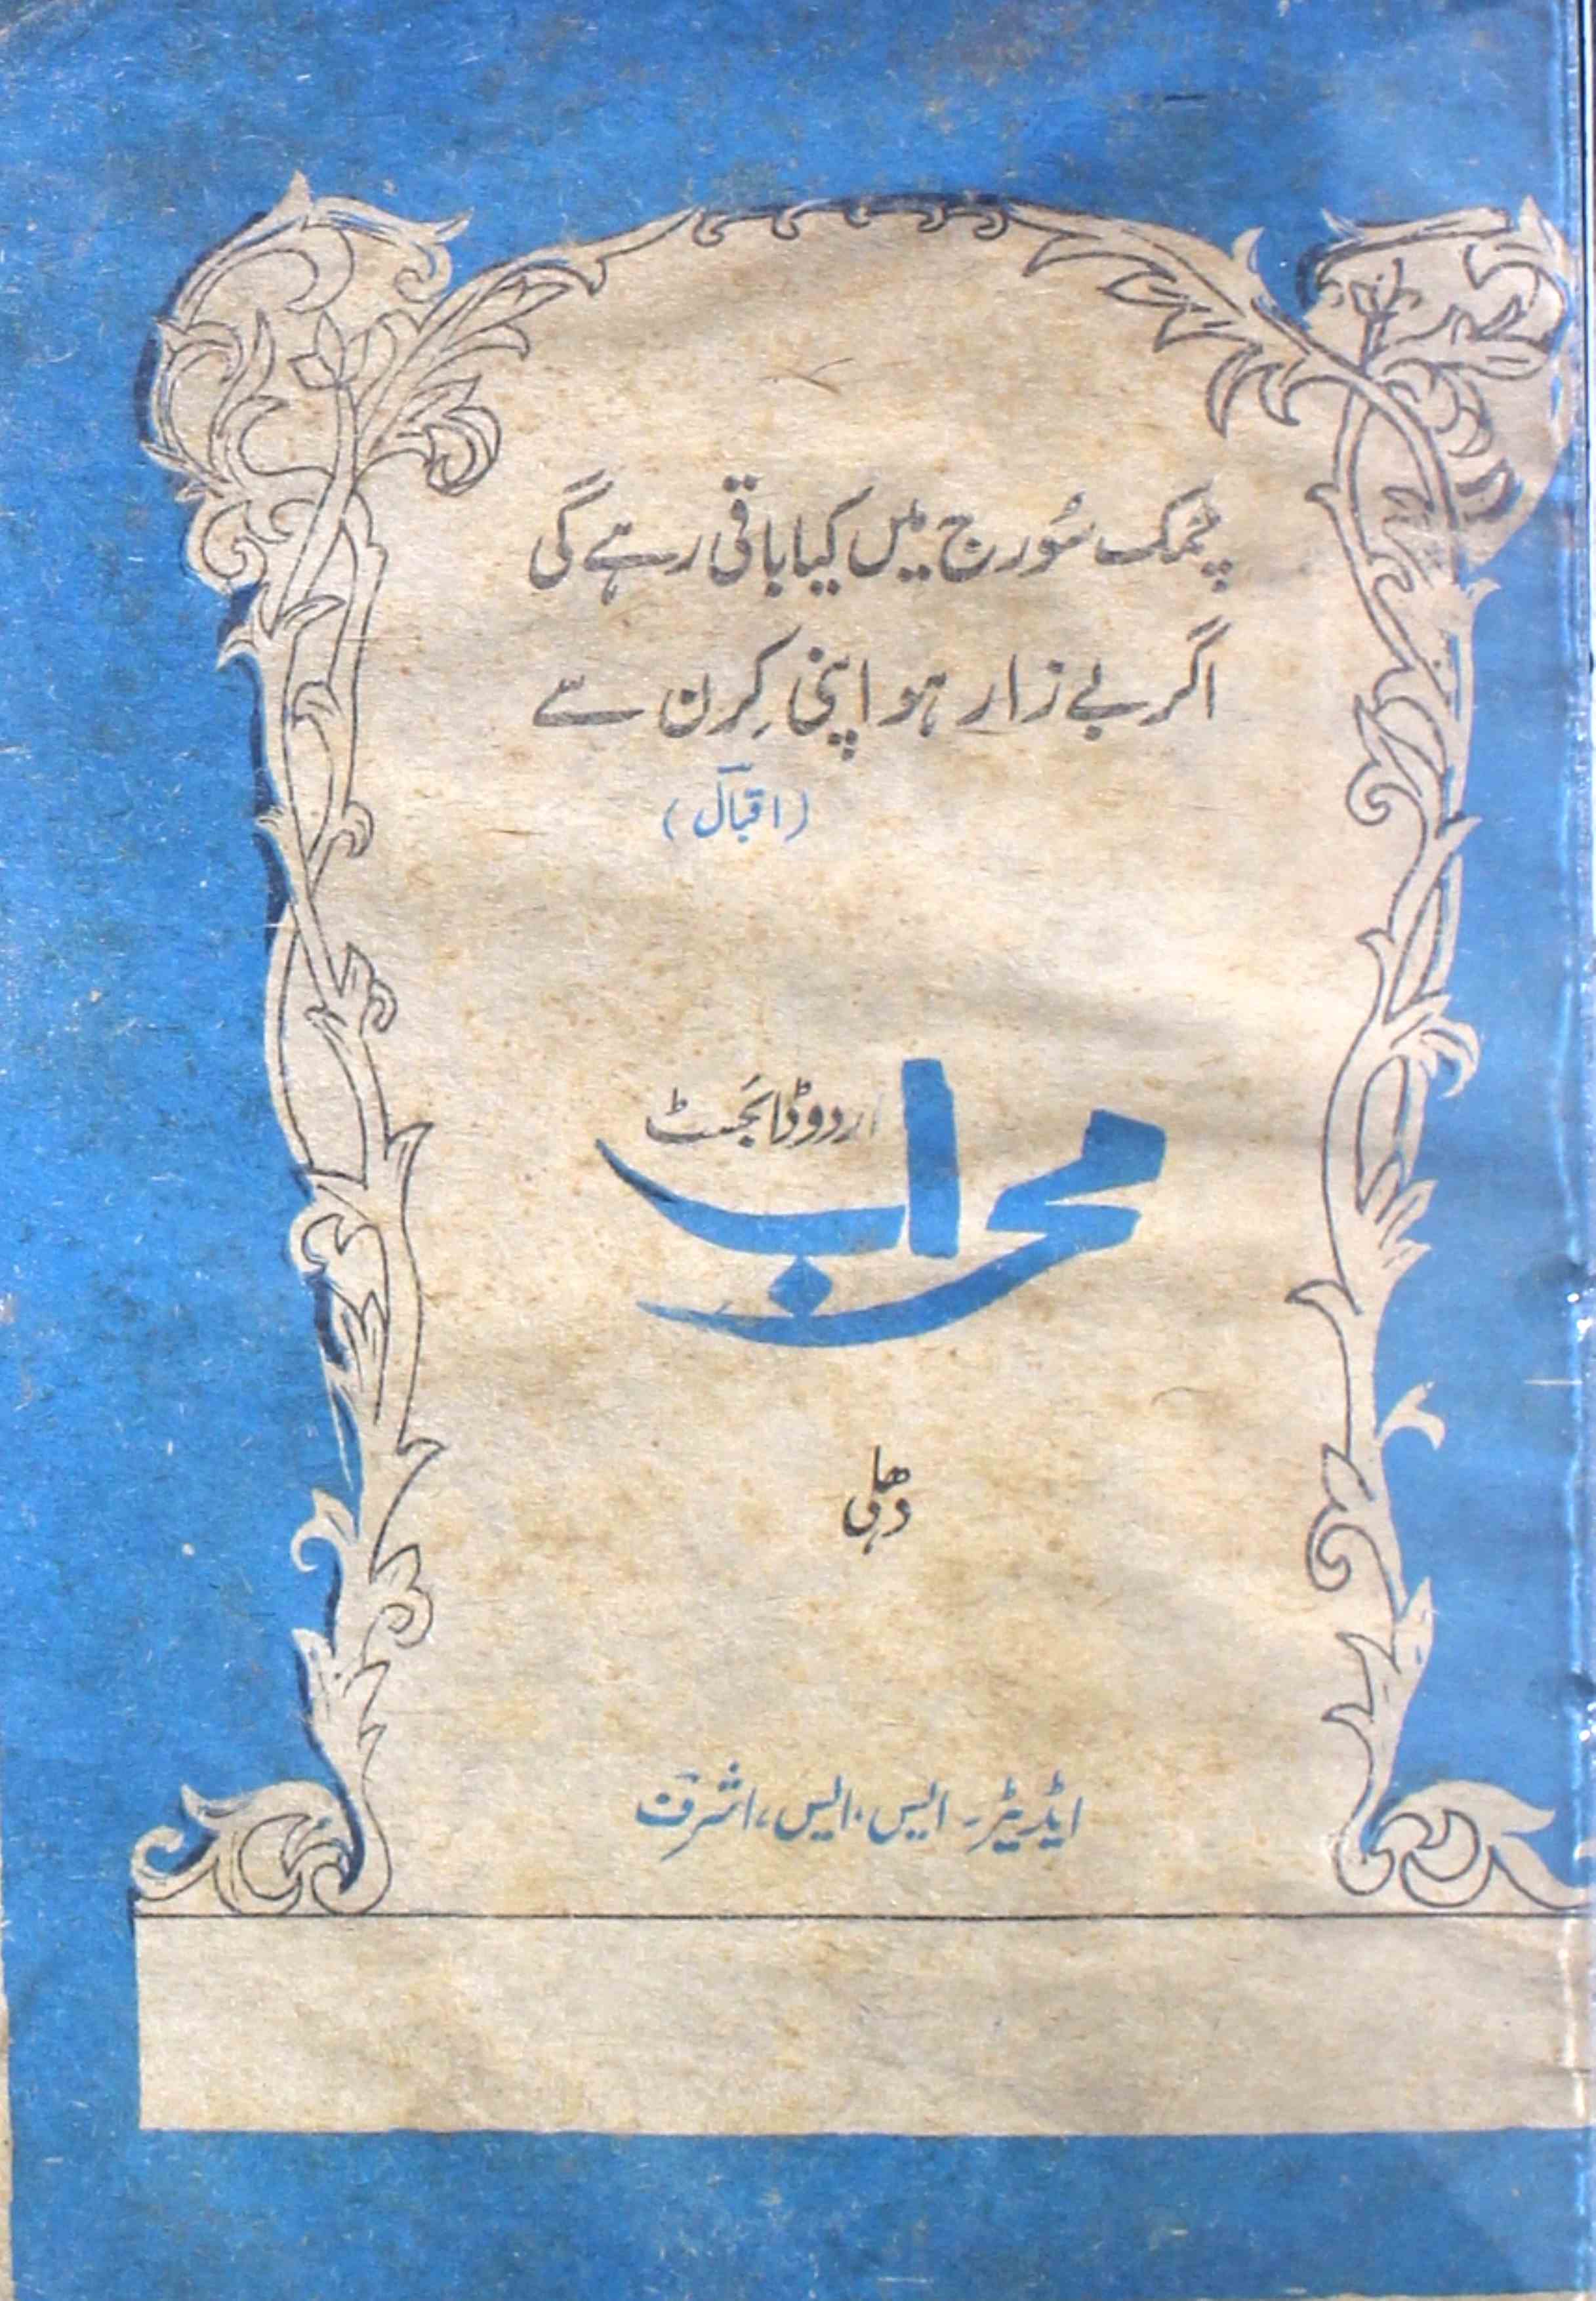 Mehraab Shumara 2 Feb 1974 SVK-Shumara Number-002